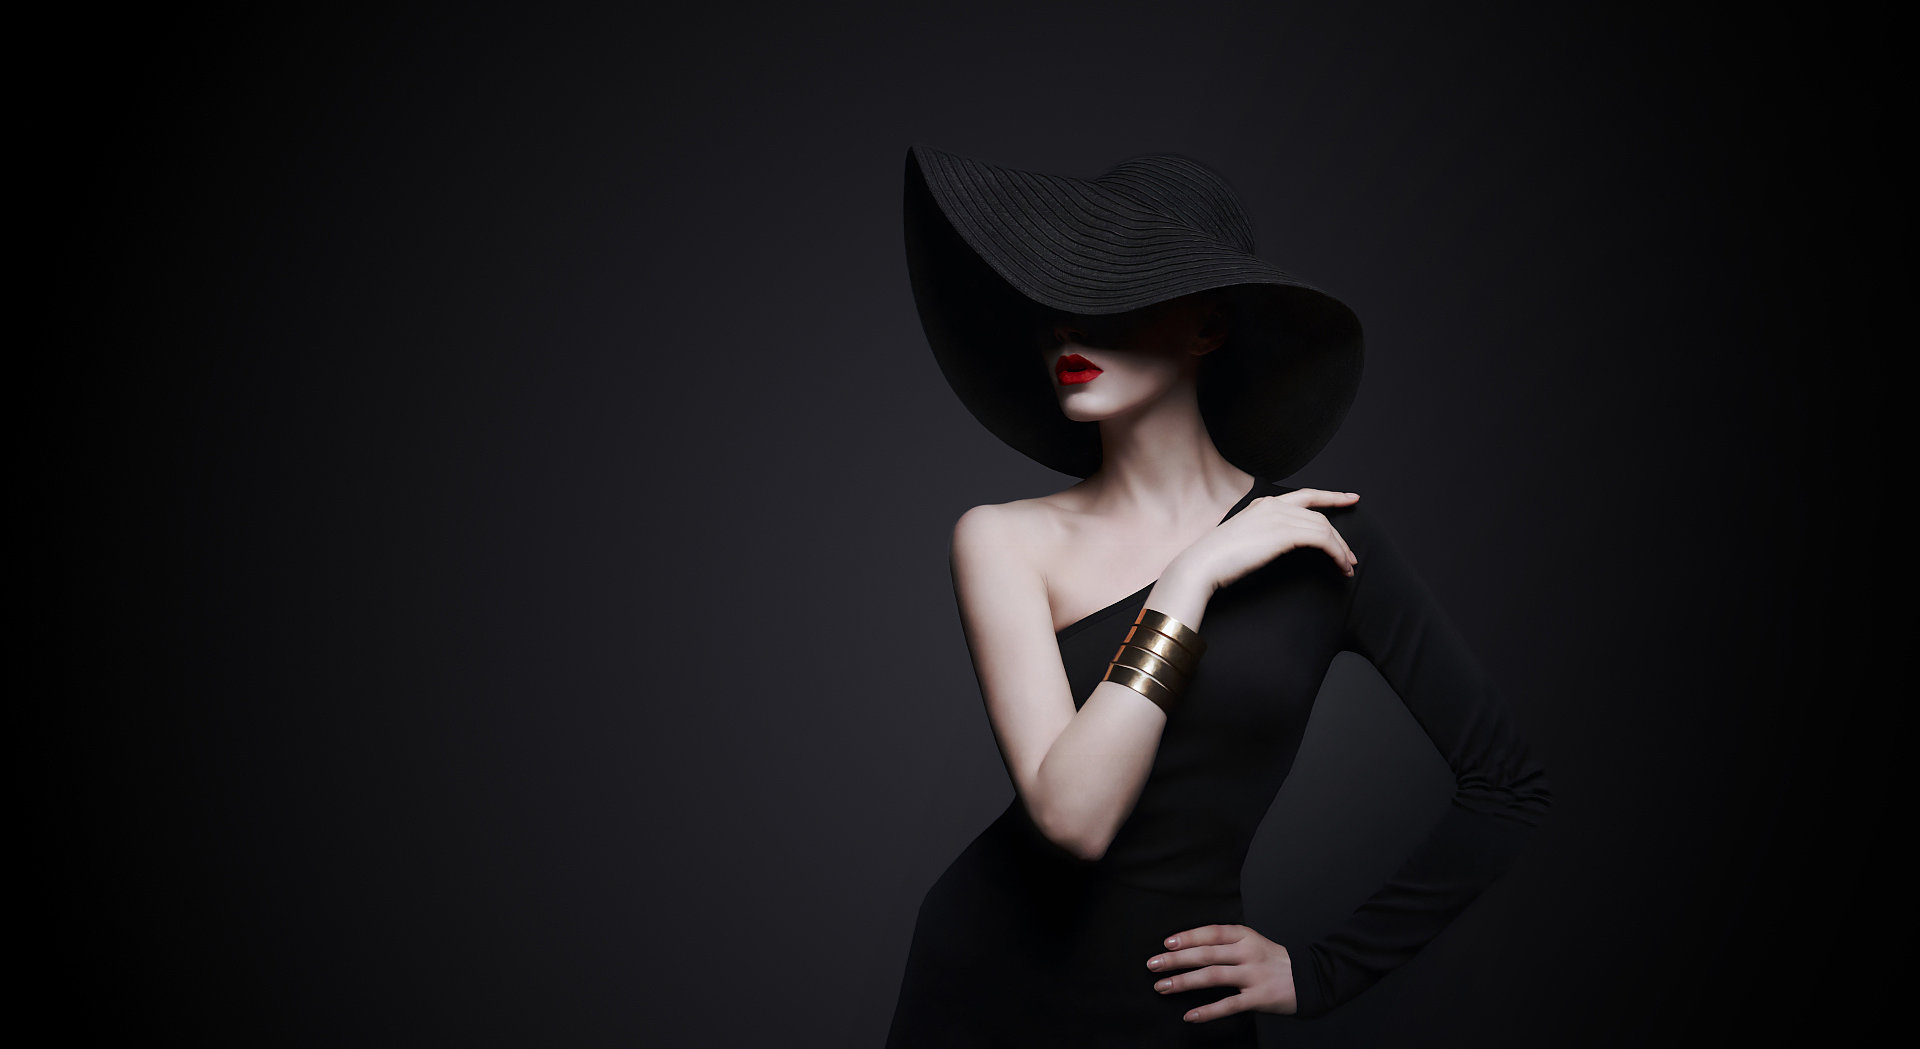 Frau mit rotem Lippenstift und schwarzem Kleid und Hut in einer eleganten Pose.